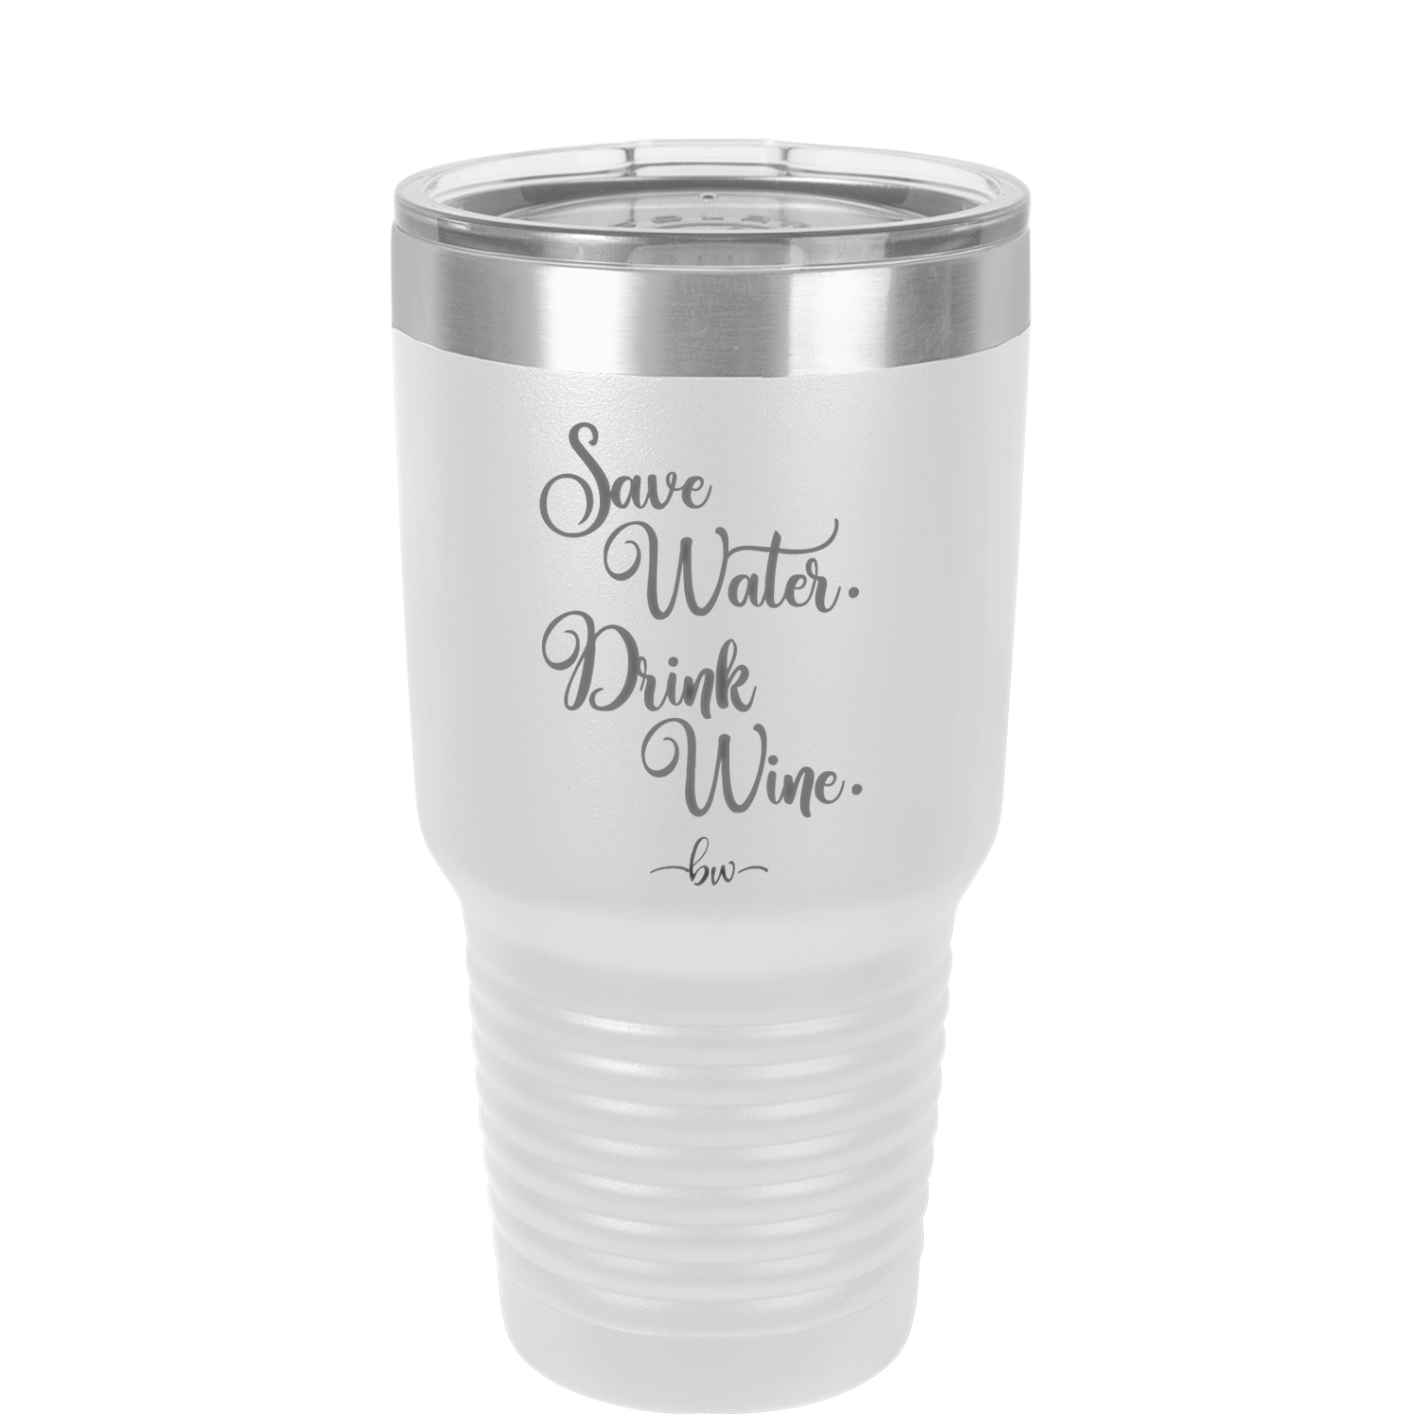 Save Water Drink Wine - Laser Engraved Stainless Steel Drinkware - 1595 -